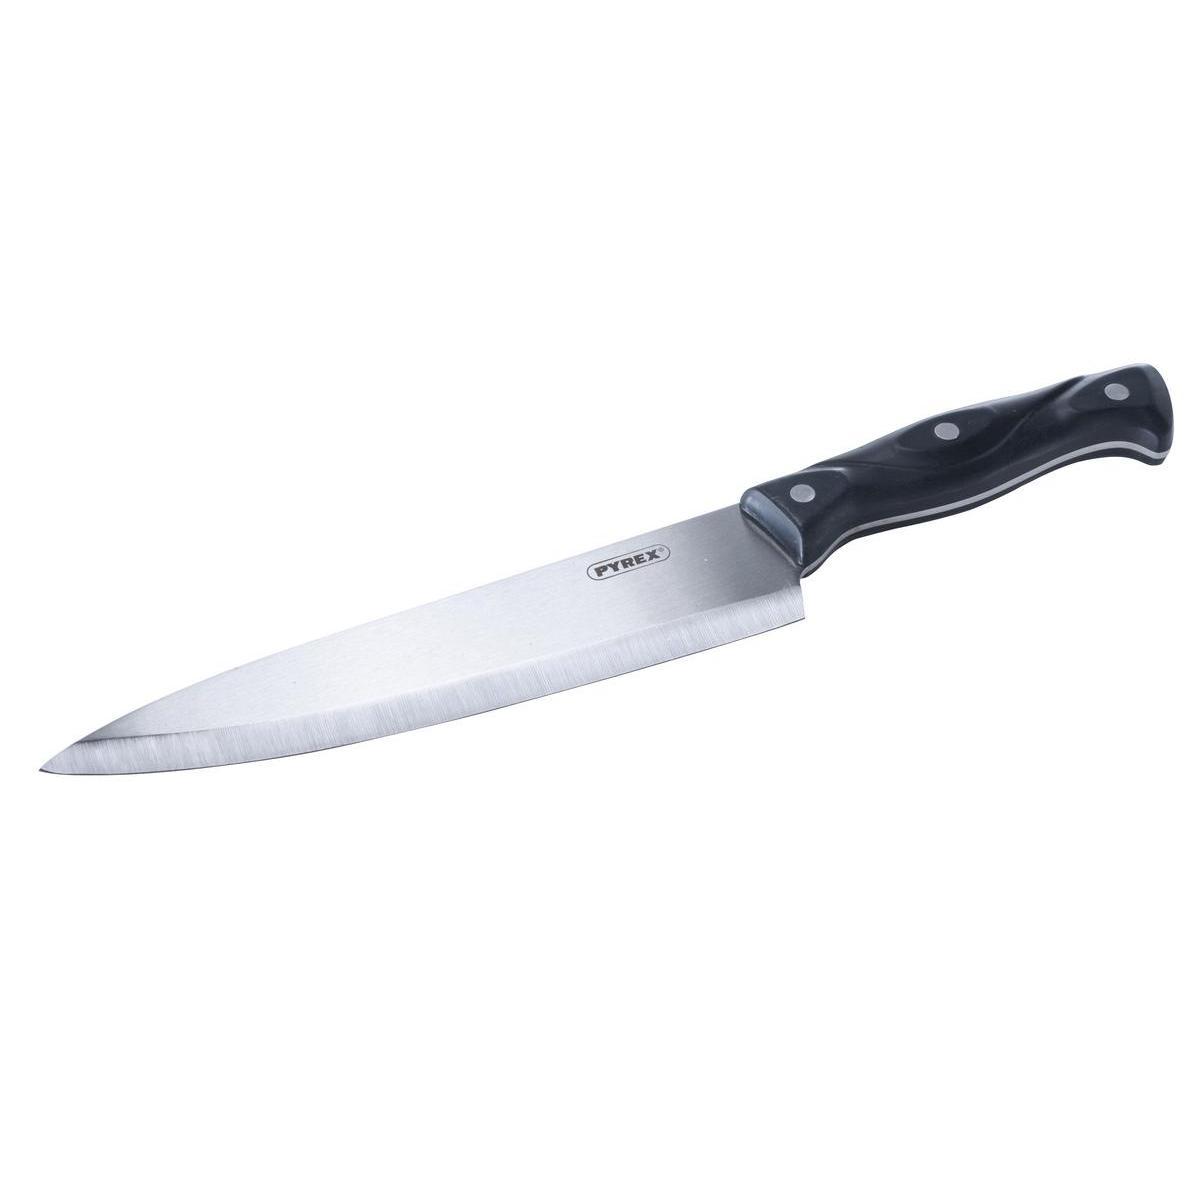 Grand couteau chef - Acier inoxydable - 33,5 x 4,7 cm - Noir